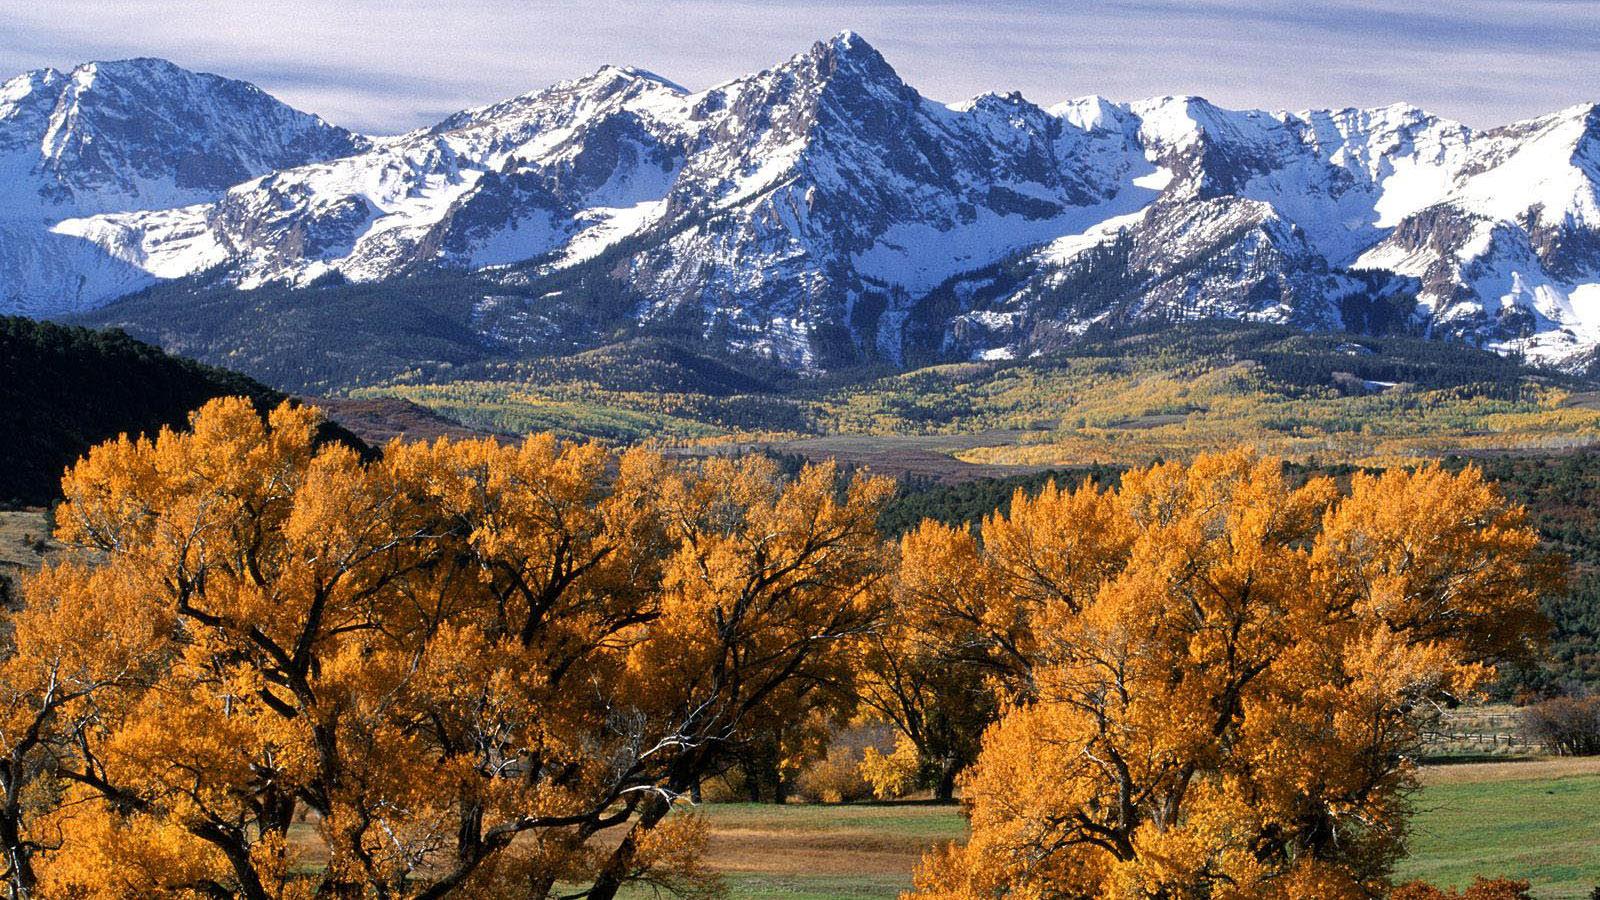 Download Wallpaper San Juan Mountains Colorado 1600 x 900 widescreen